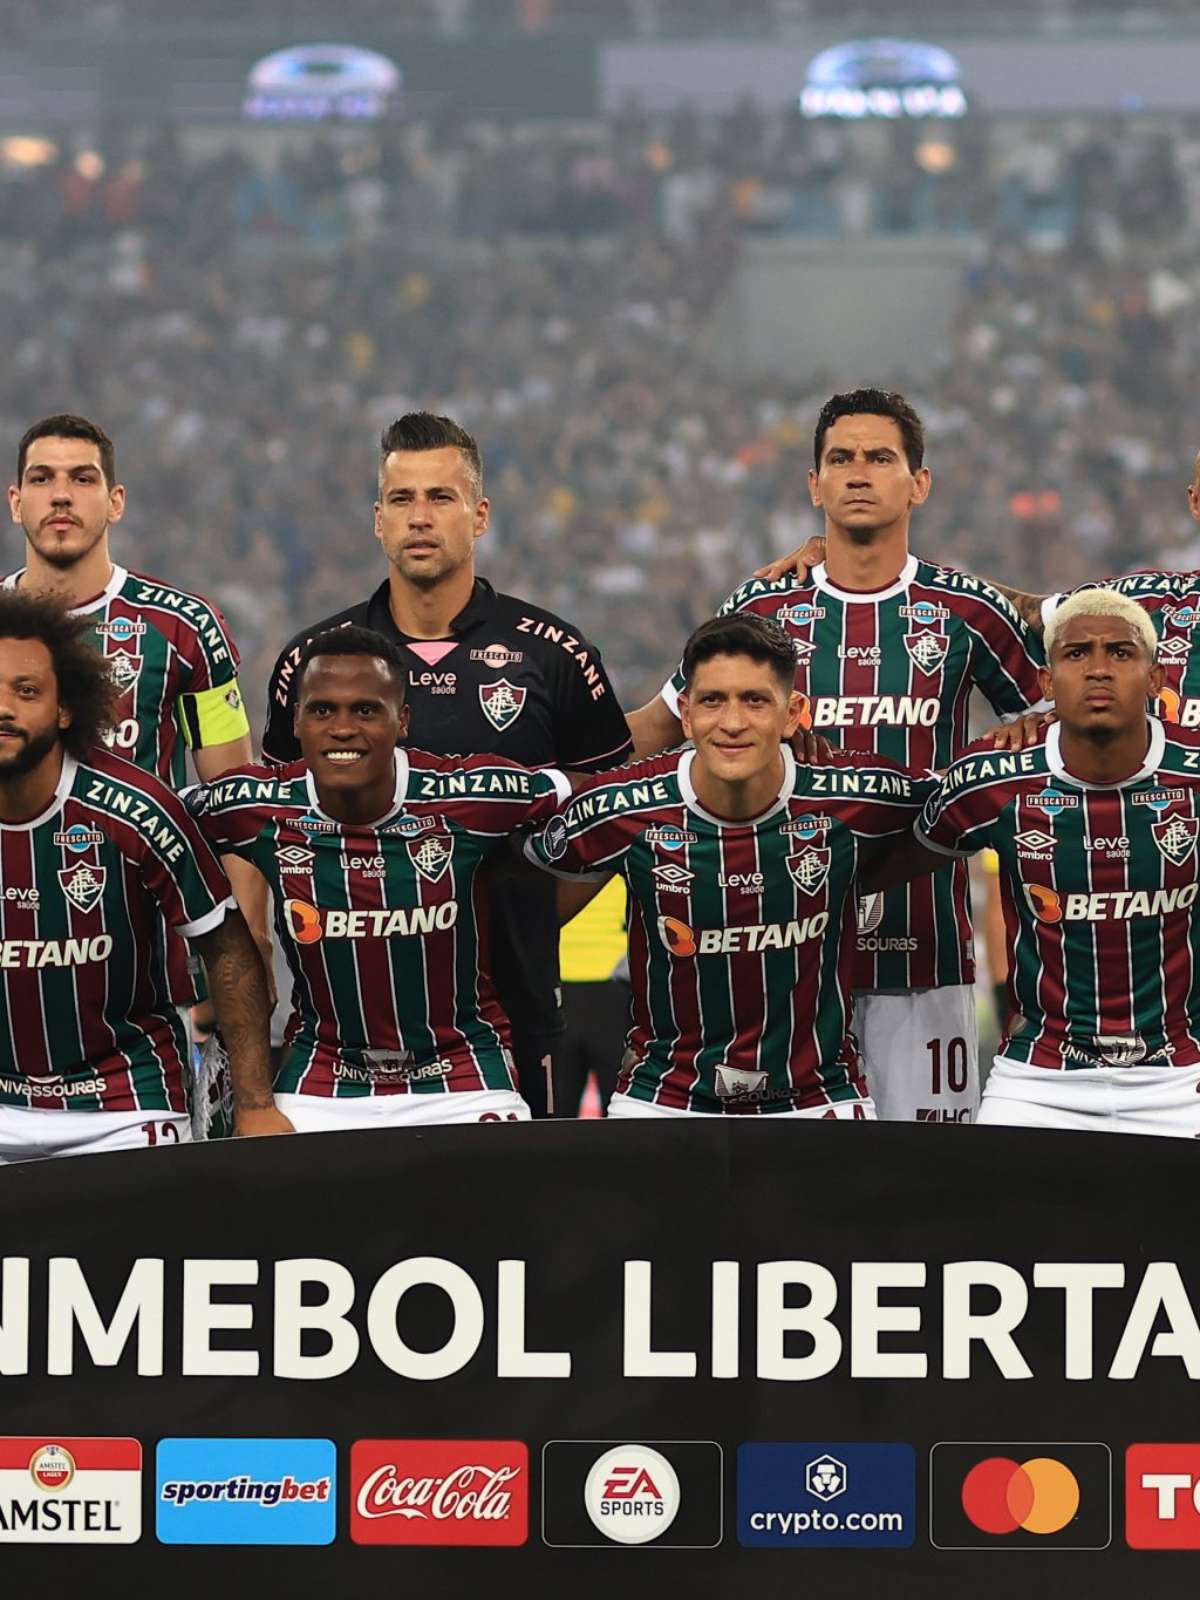 Top 10 finais de Libertadores - ESPORTE - Br - Futboo.com